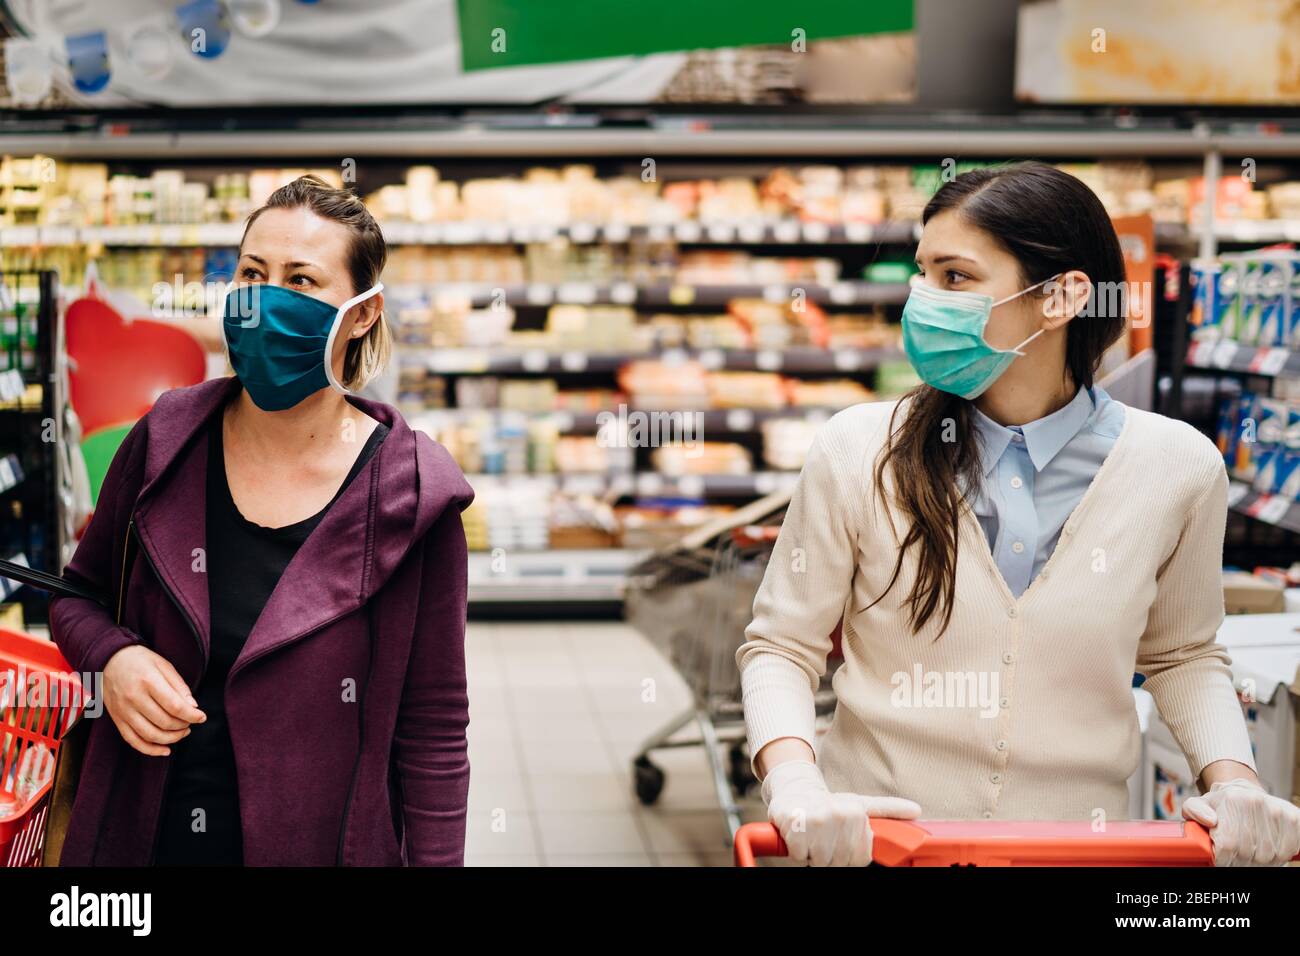 Käufer mit Masken Kauf für Lebensmittel aufgrund von Coronavirus Pandemie im Lebensmittelgeschäft.COVID-19 Lebensmittel einkaufen.Quarantäne Vorbereitung.Panik Kauf und s Stockfoto